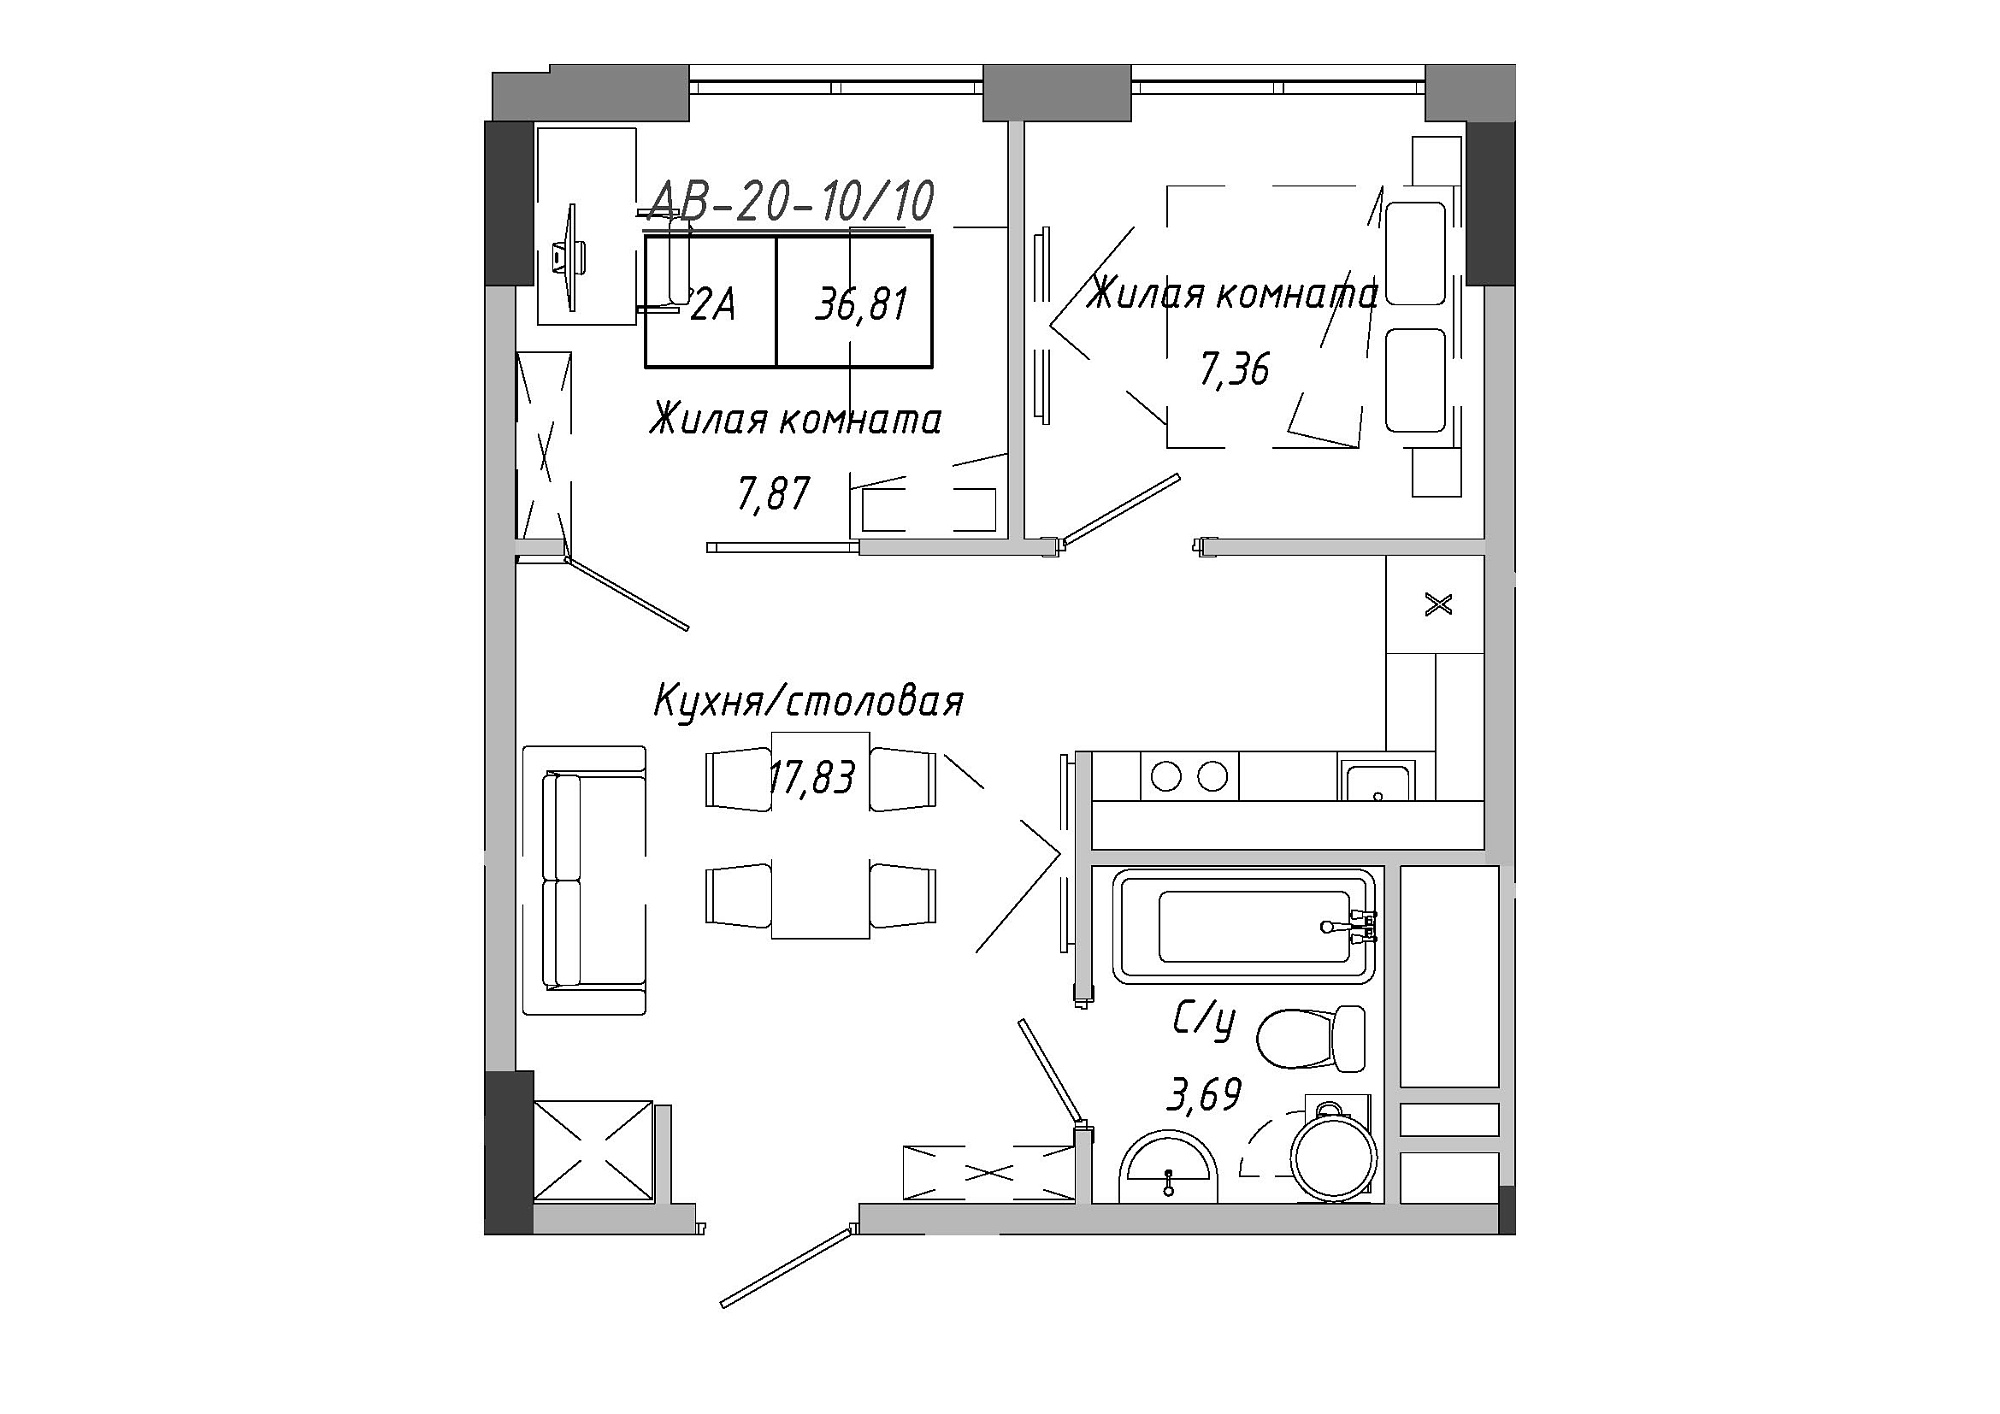 Планировка 2-к квартира площей 37.15м2, AB-20-10/00010.